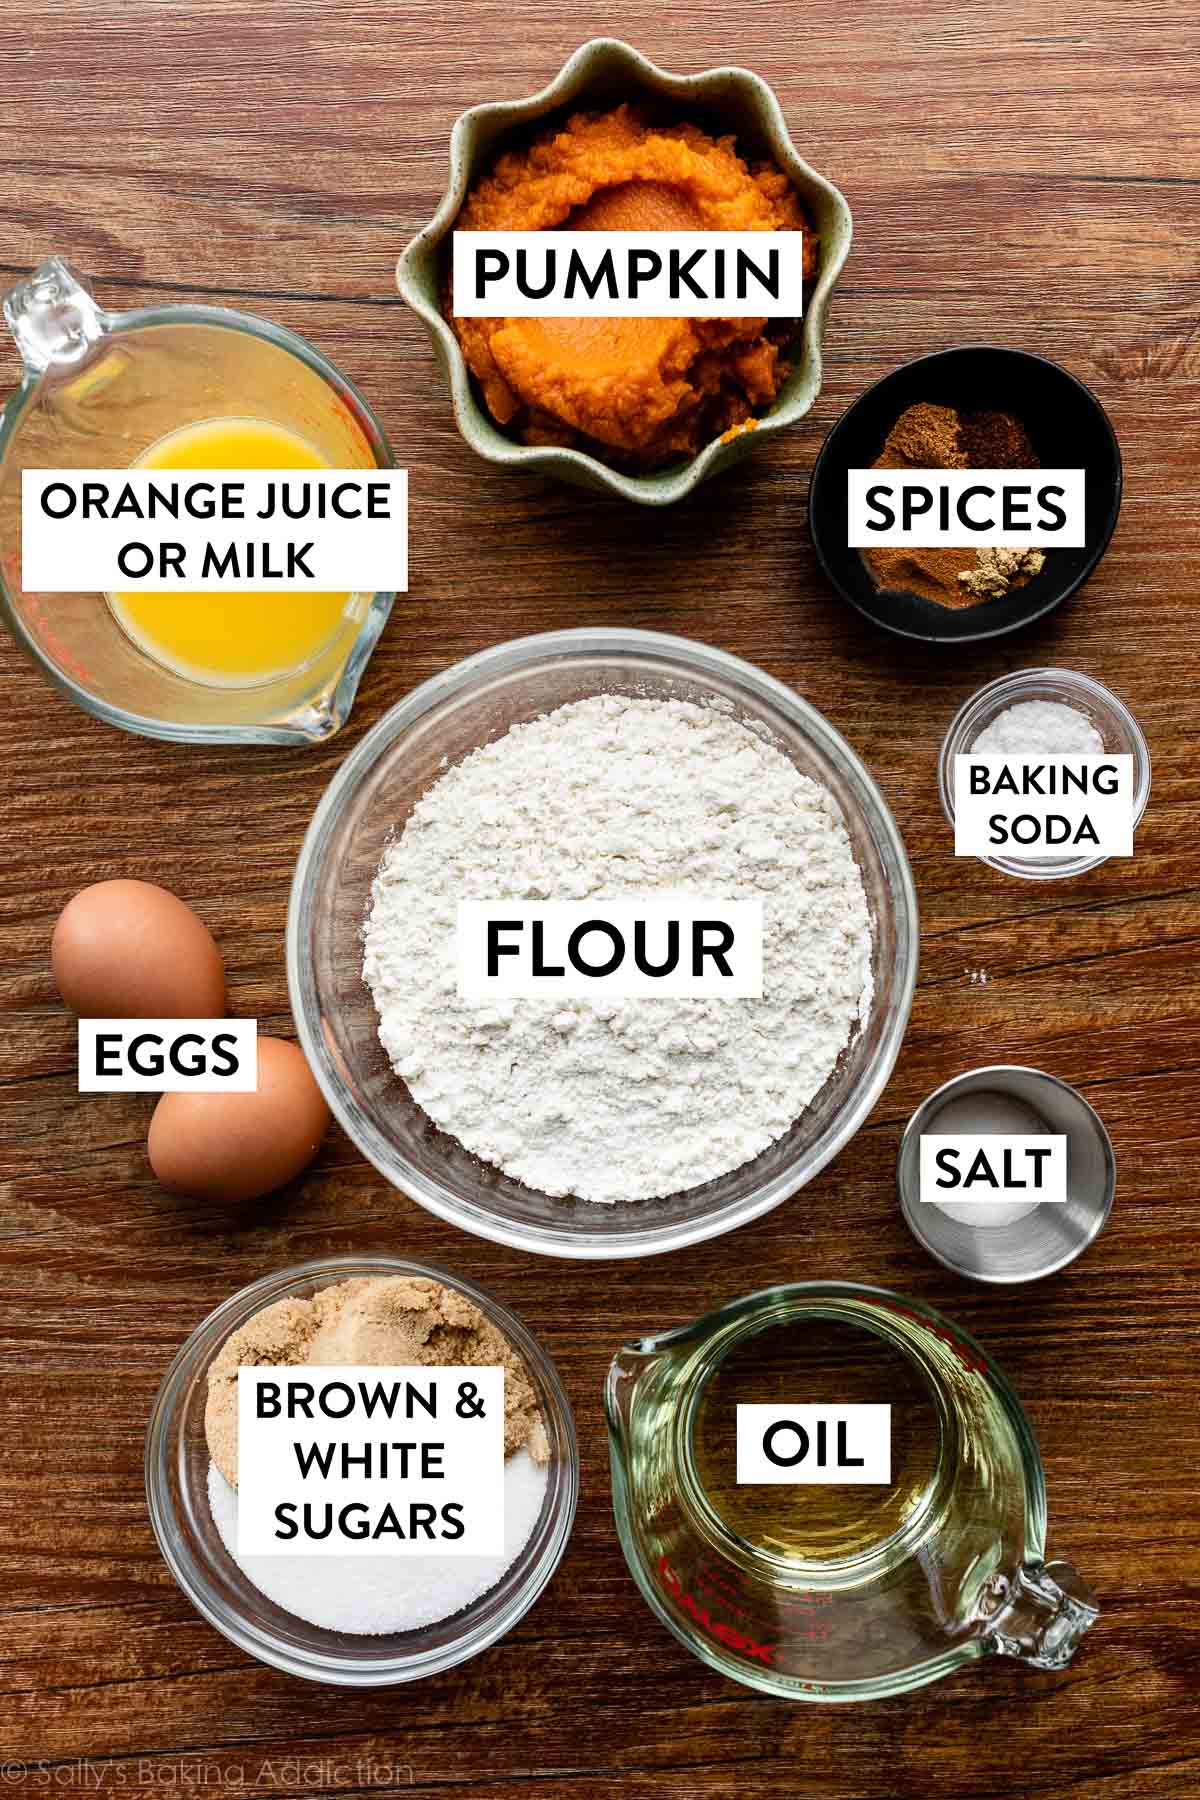 farina, bicarbonato di sodio, spezie, sale, olio, uova e altri ingredienti in ciotole su fondo di legno.